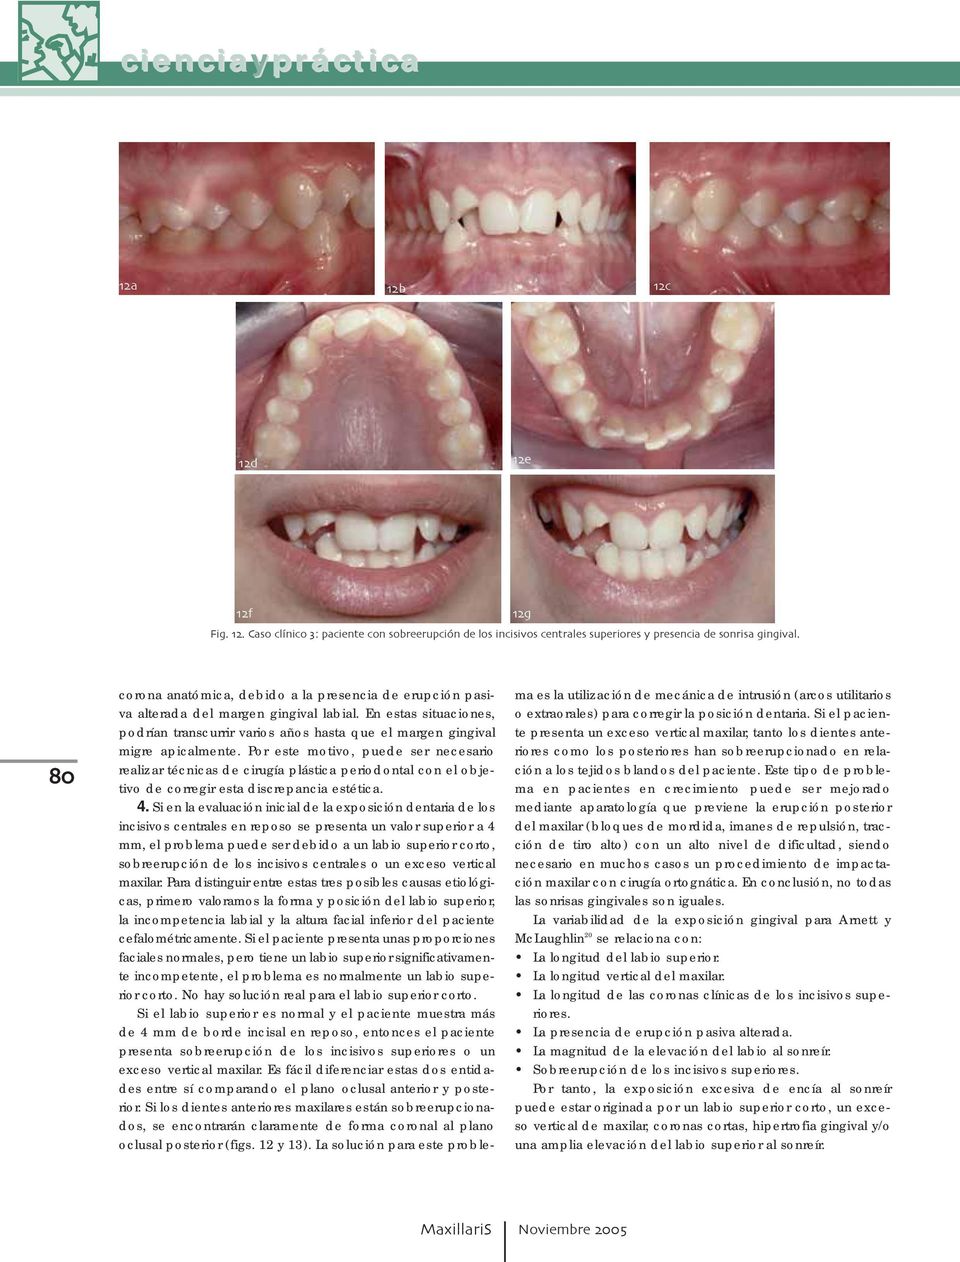 Por este motivo, puede ser necesario realizar técnicas de cirugía plástica periodontal con el objetivo de corregir esta discrepancia estética. 4.